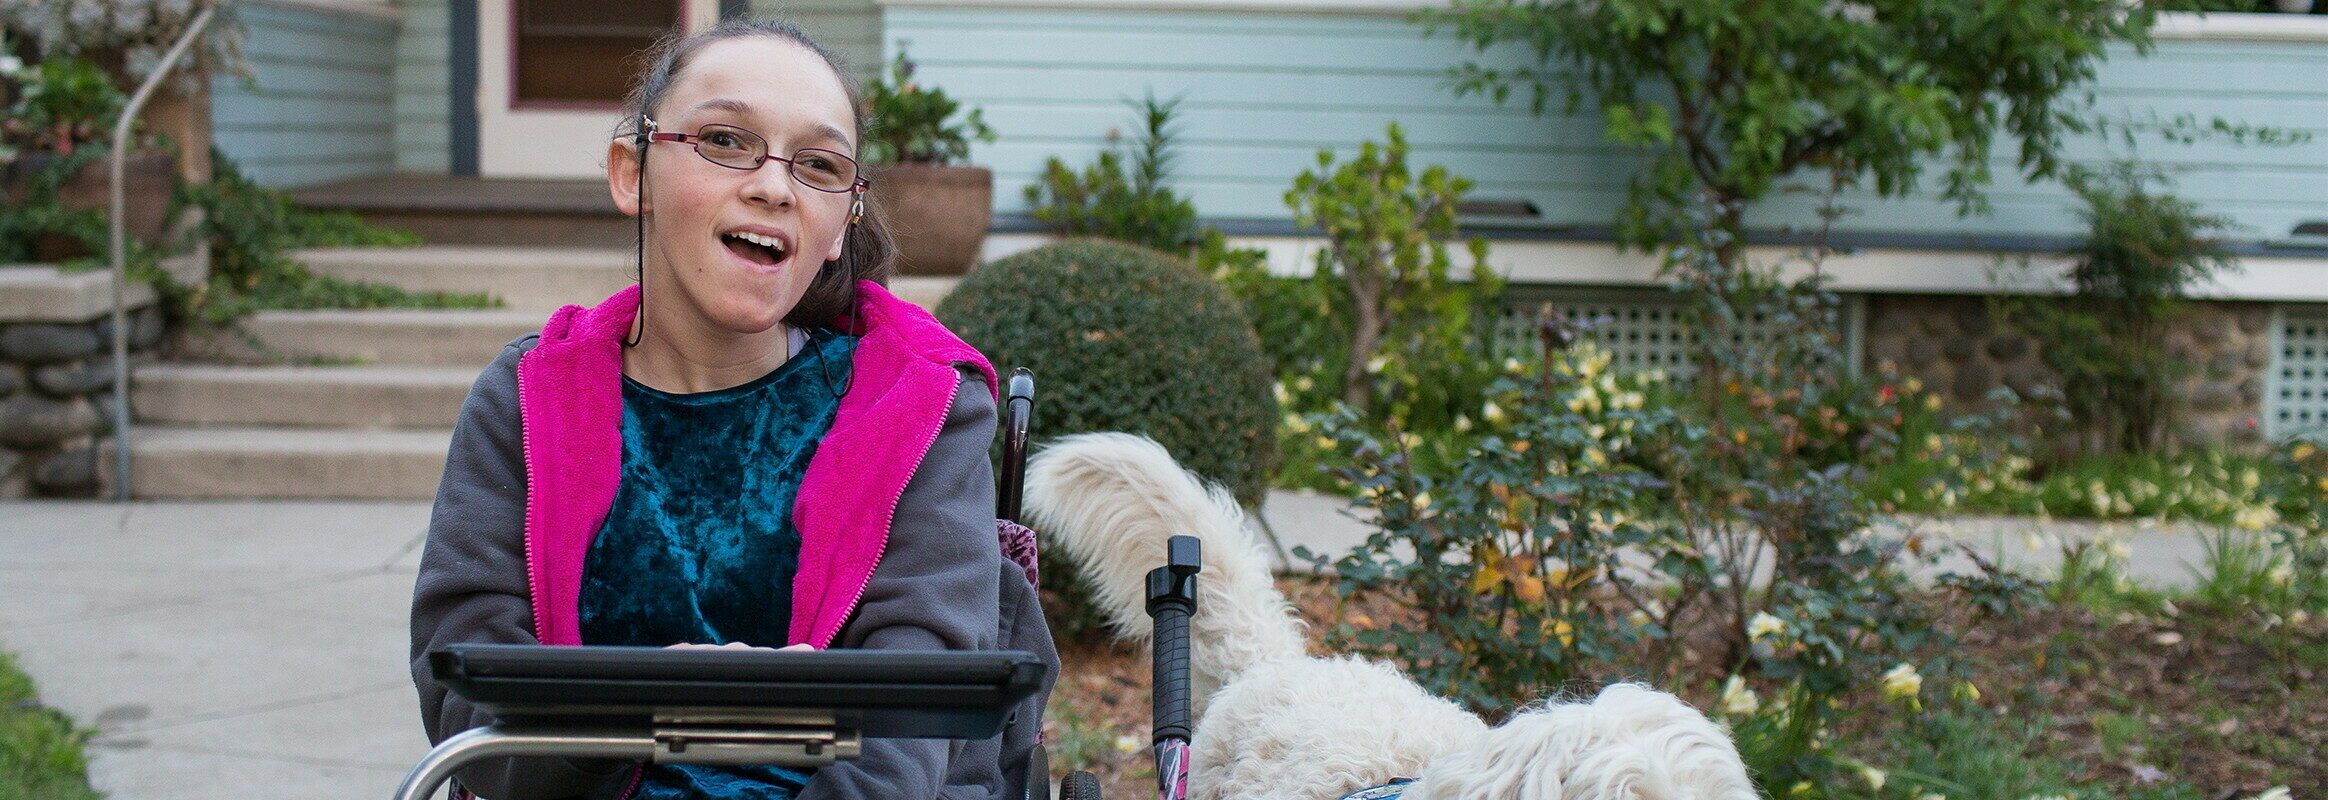 Elina, een witte vrouw in een rolstoel met een iPad en een hond aan haar zijde